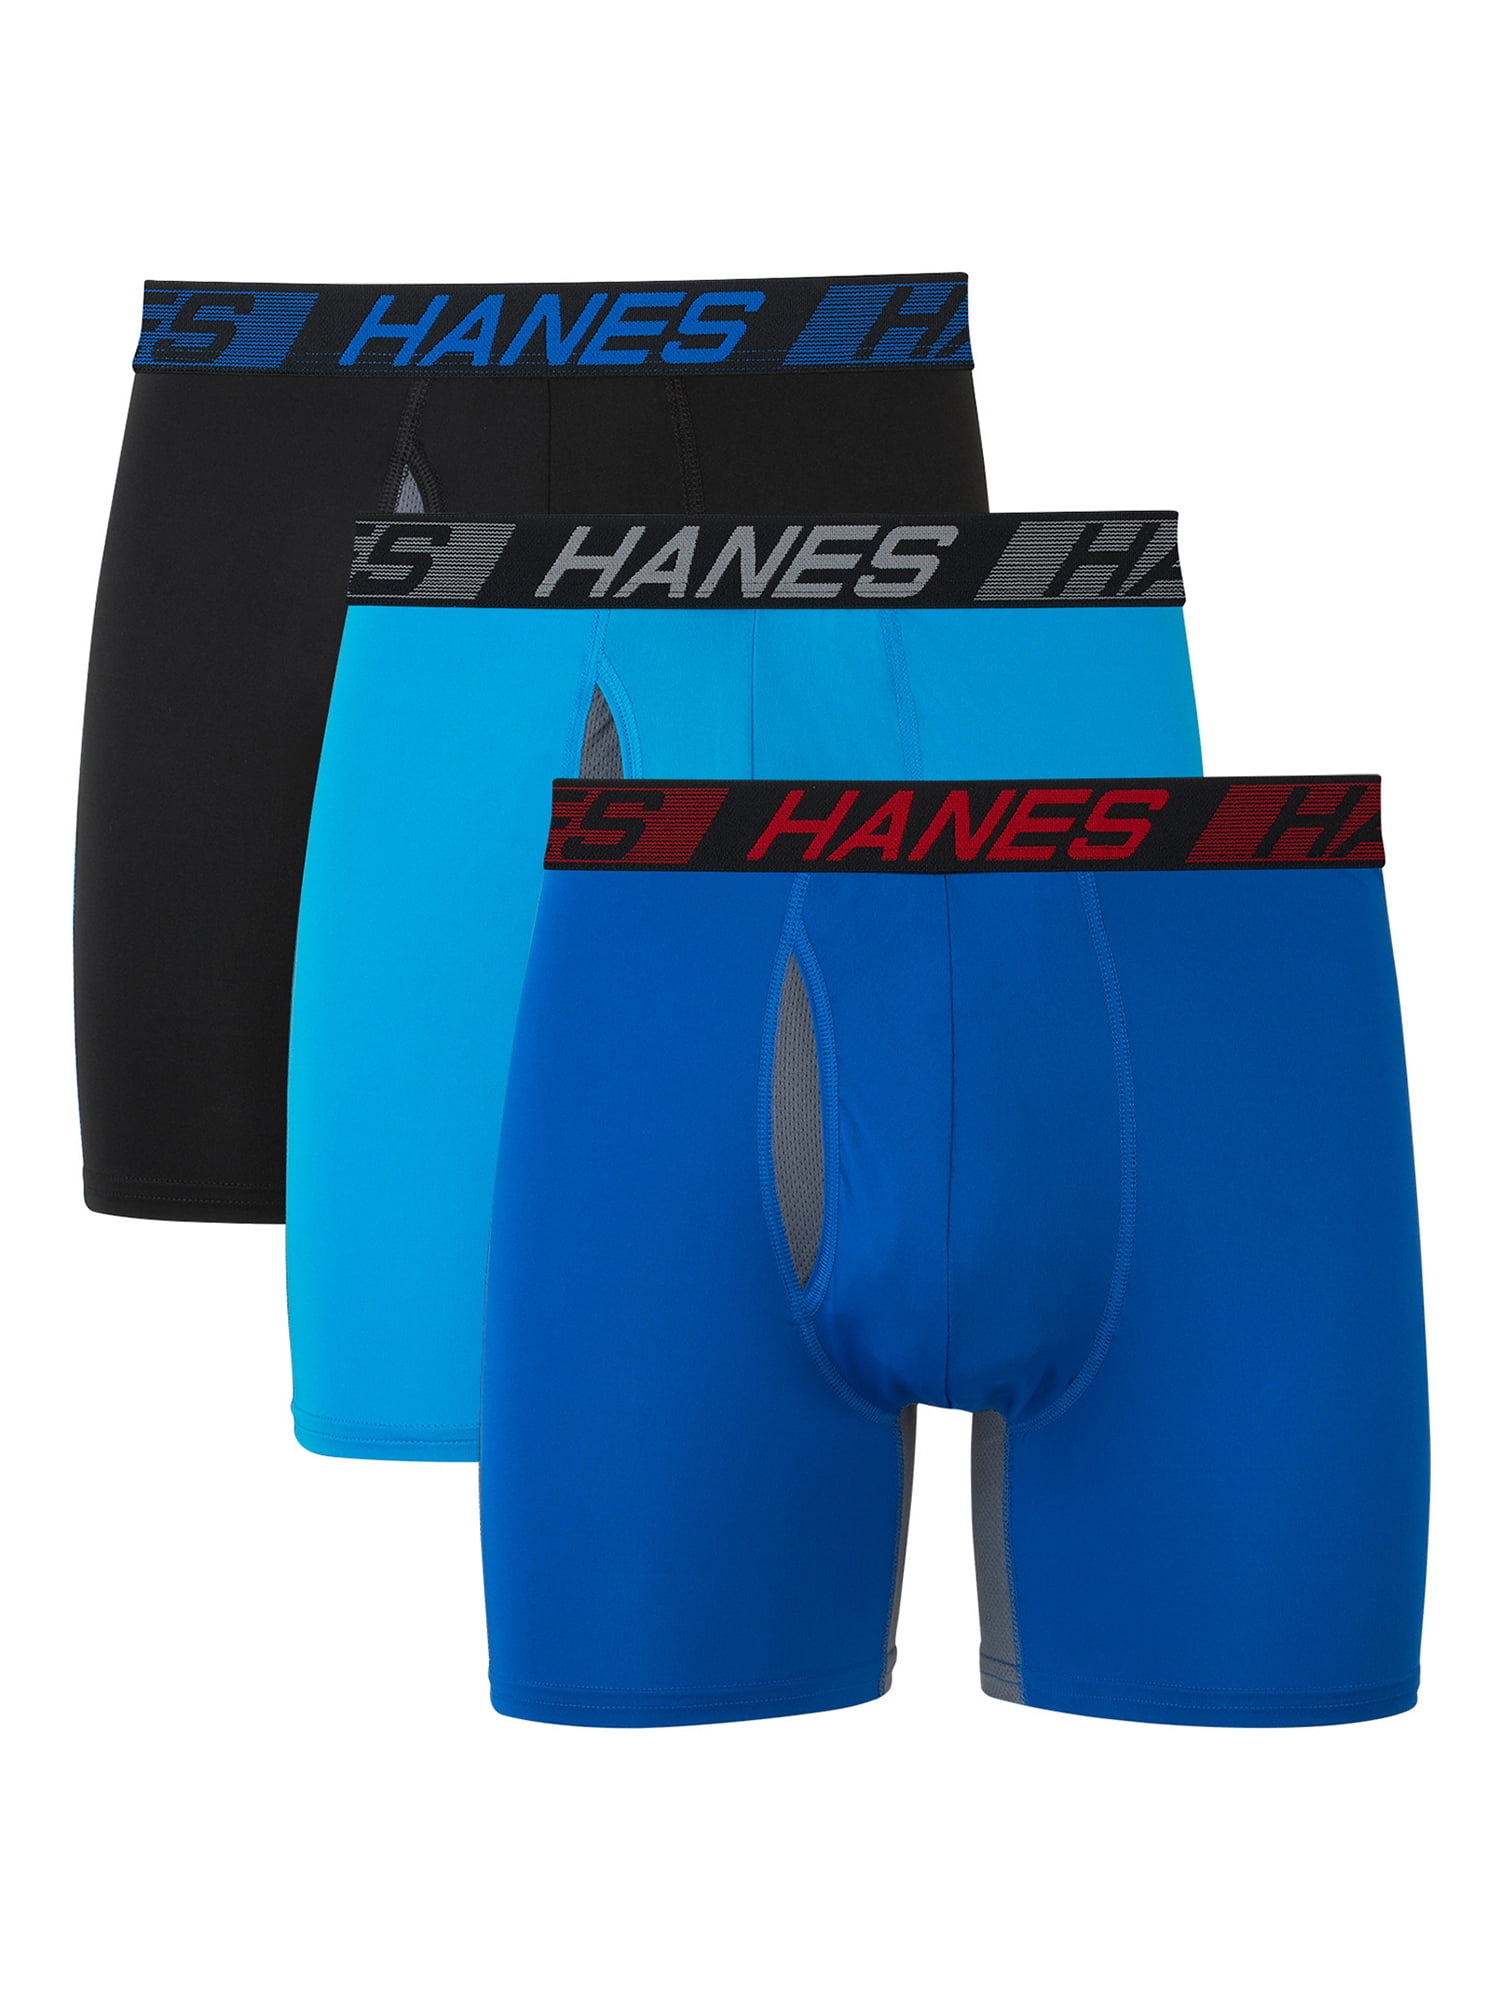 Men's Hanes Underwear - up to −30%